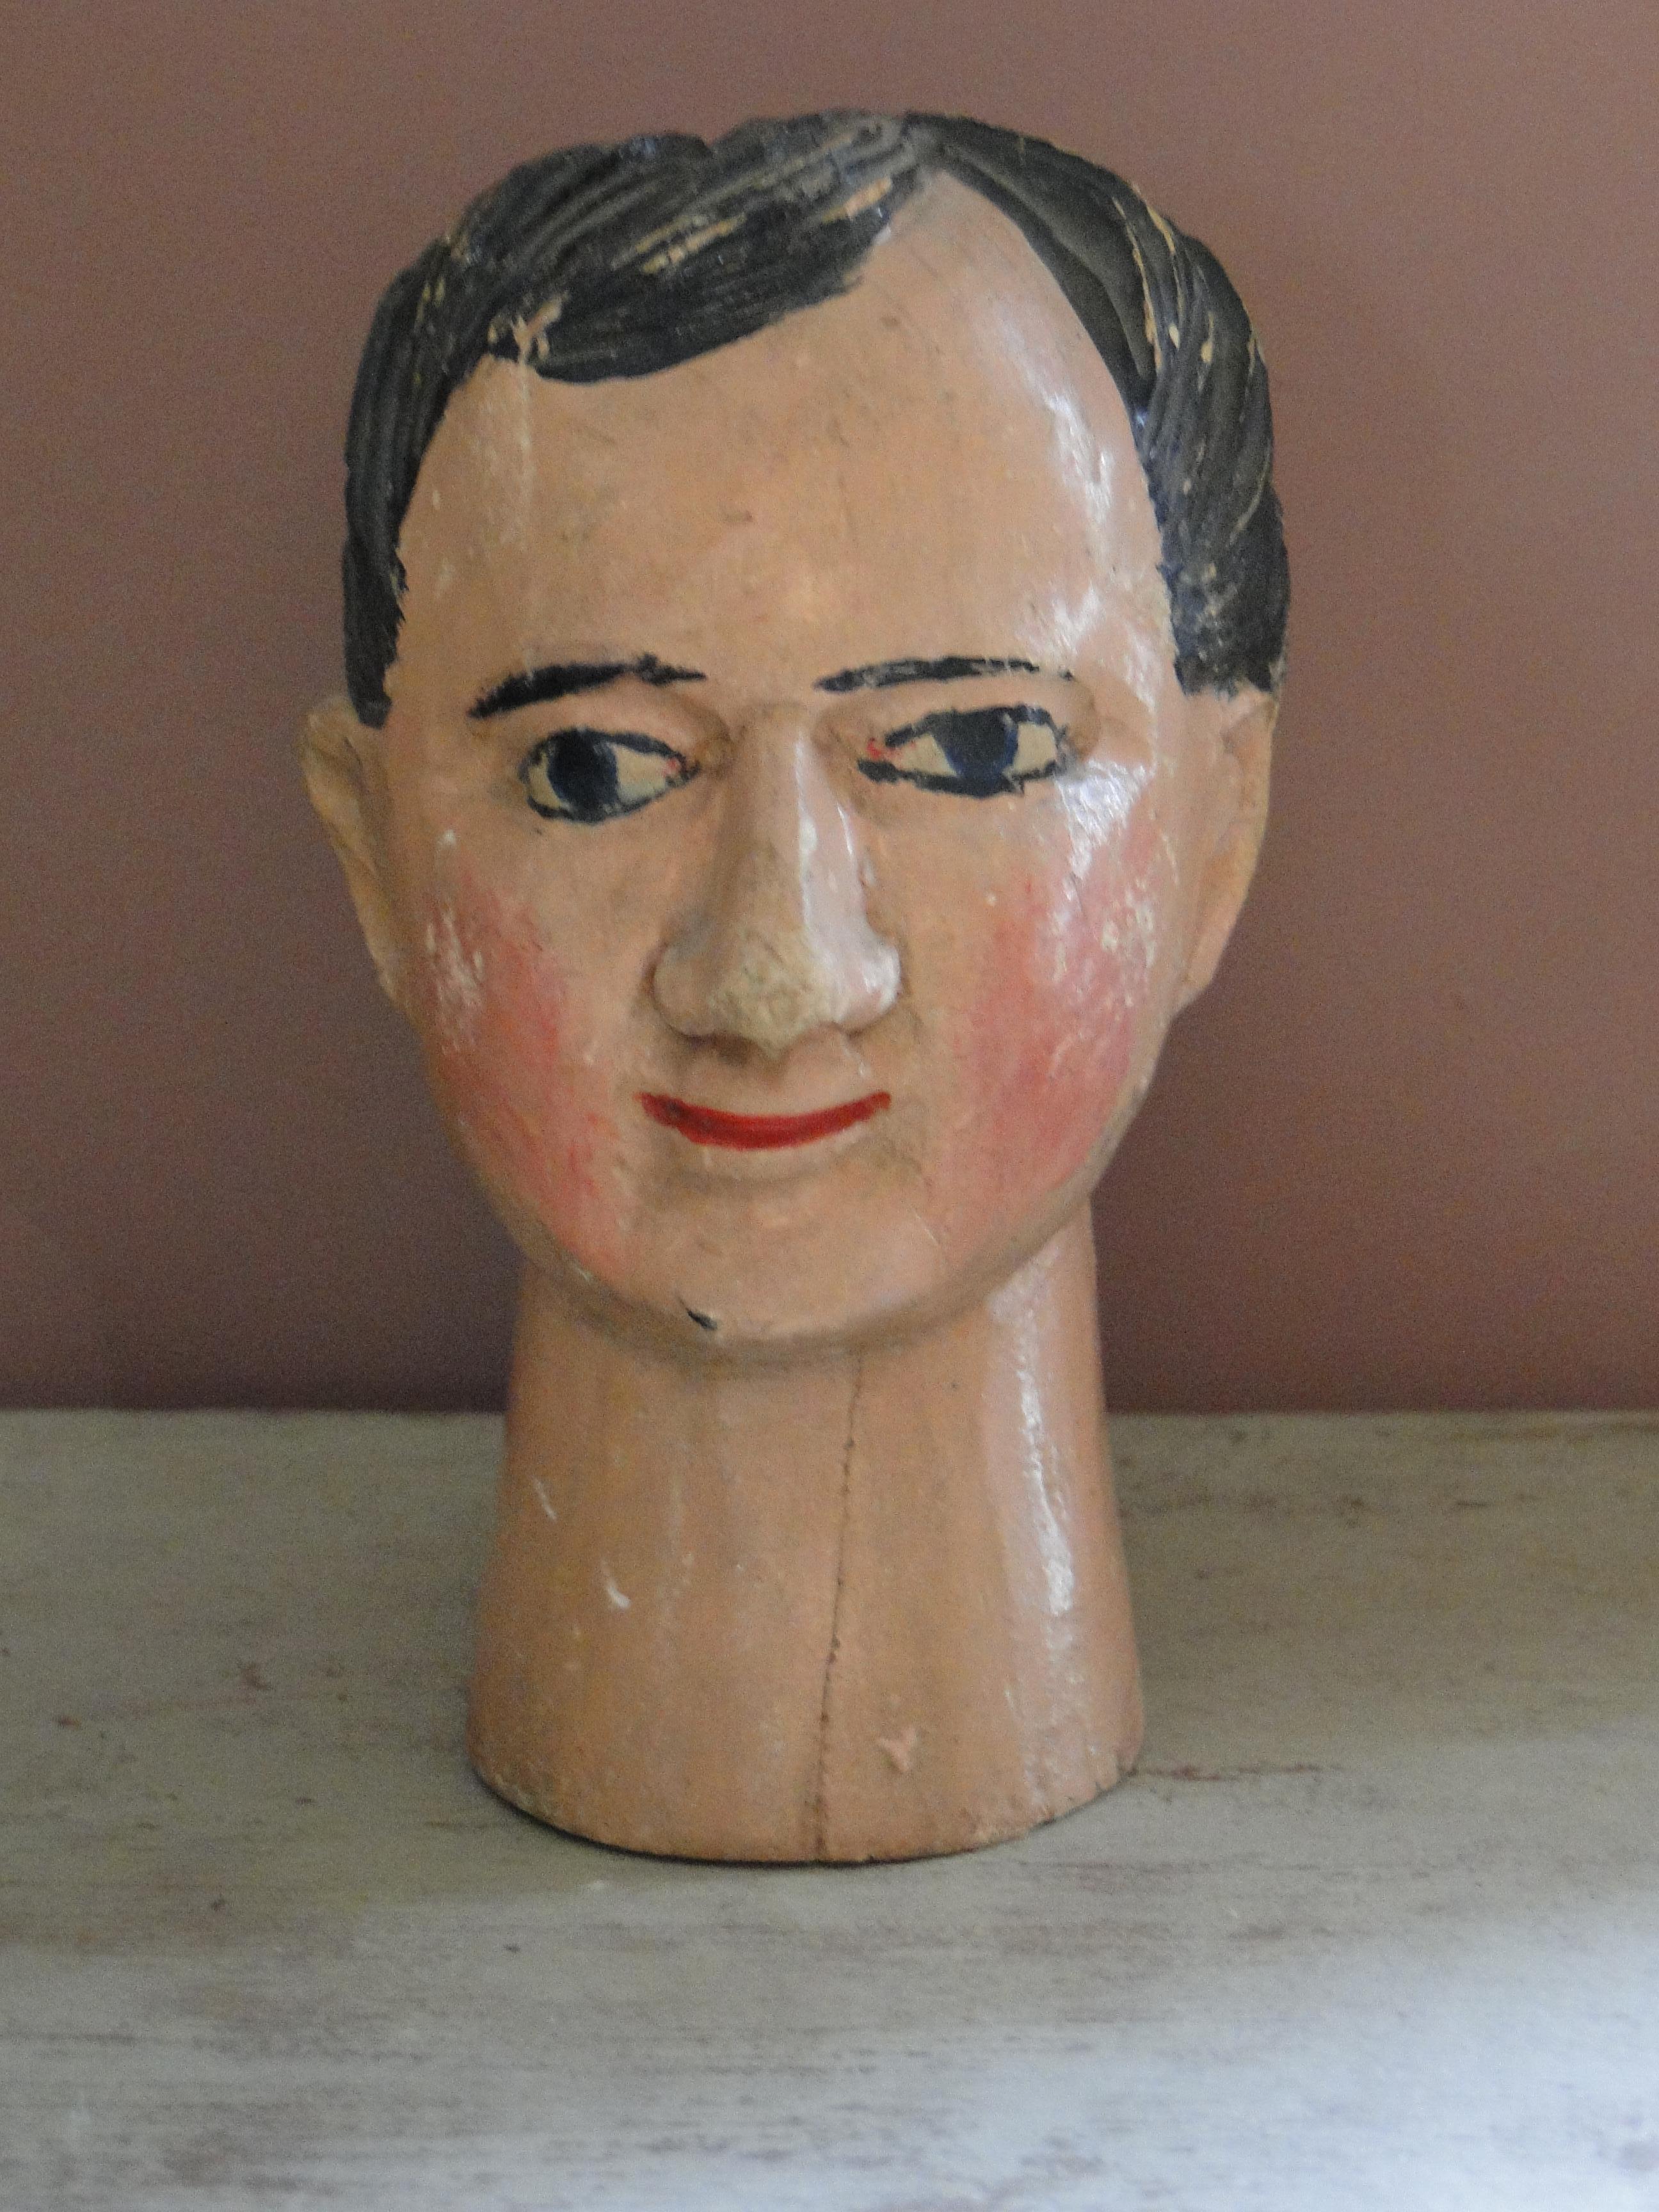 Wooden head sculptured, marionet, puppet head.